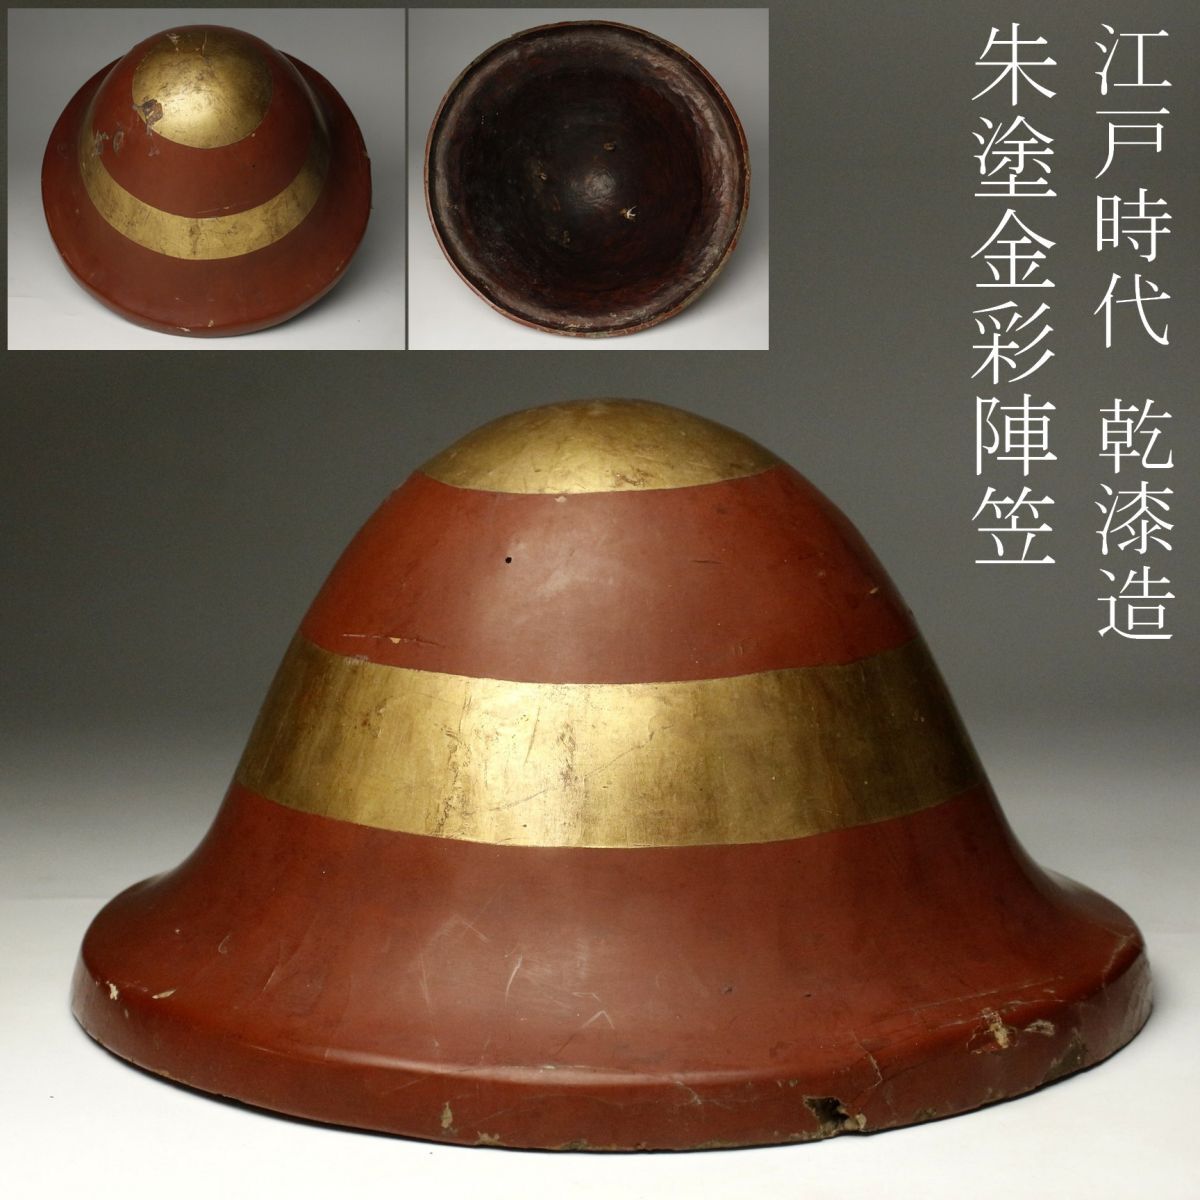 [LIG] Edo era . lacquer structure . paint gold paint ...... cap armour era armor [.QR]24.4